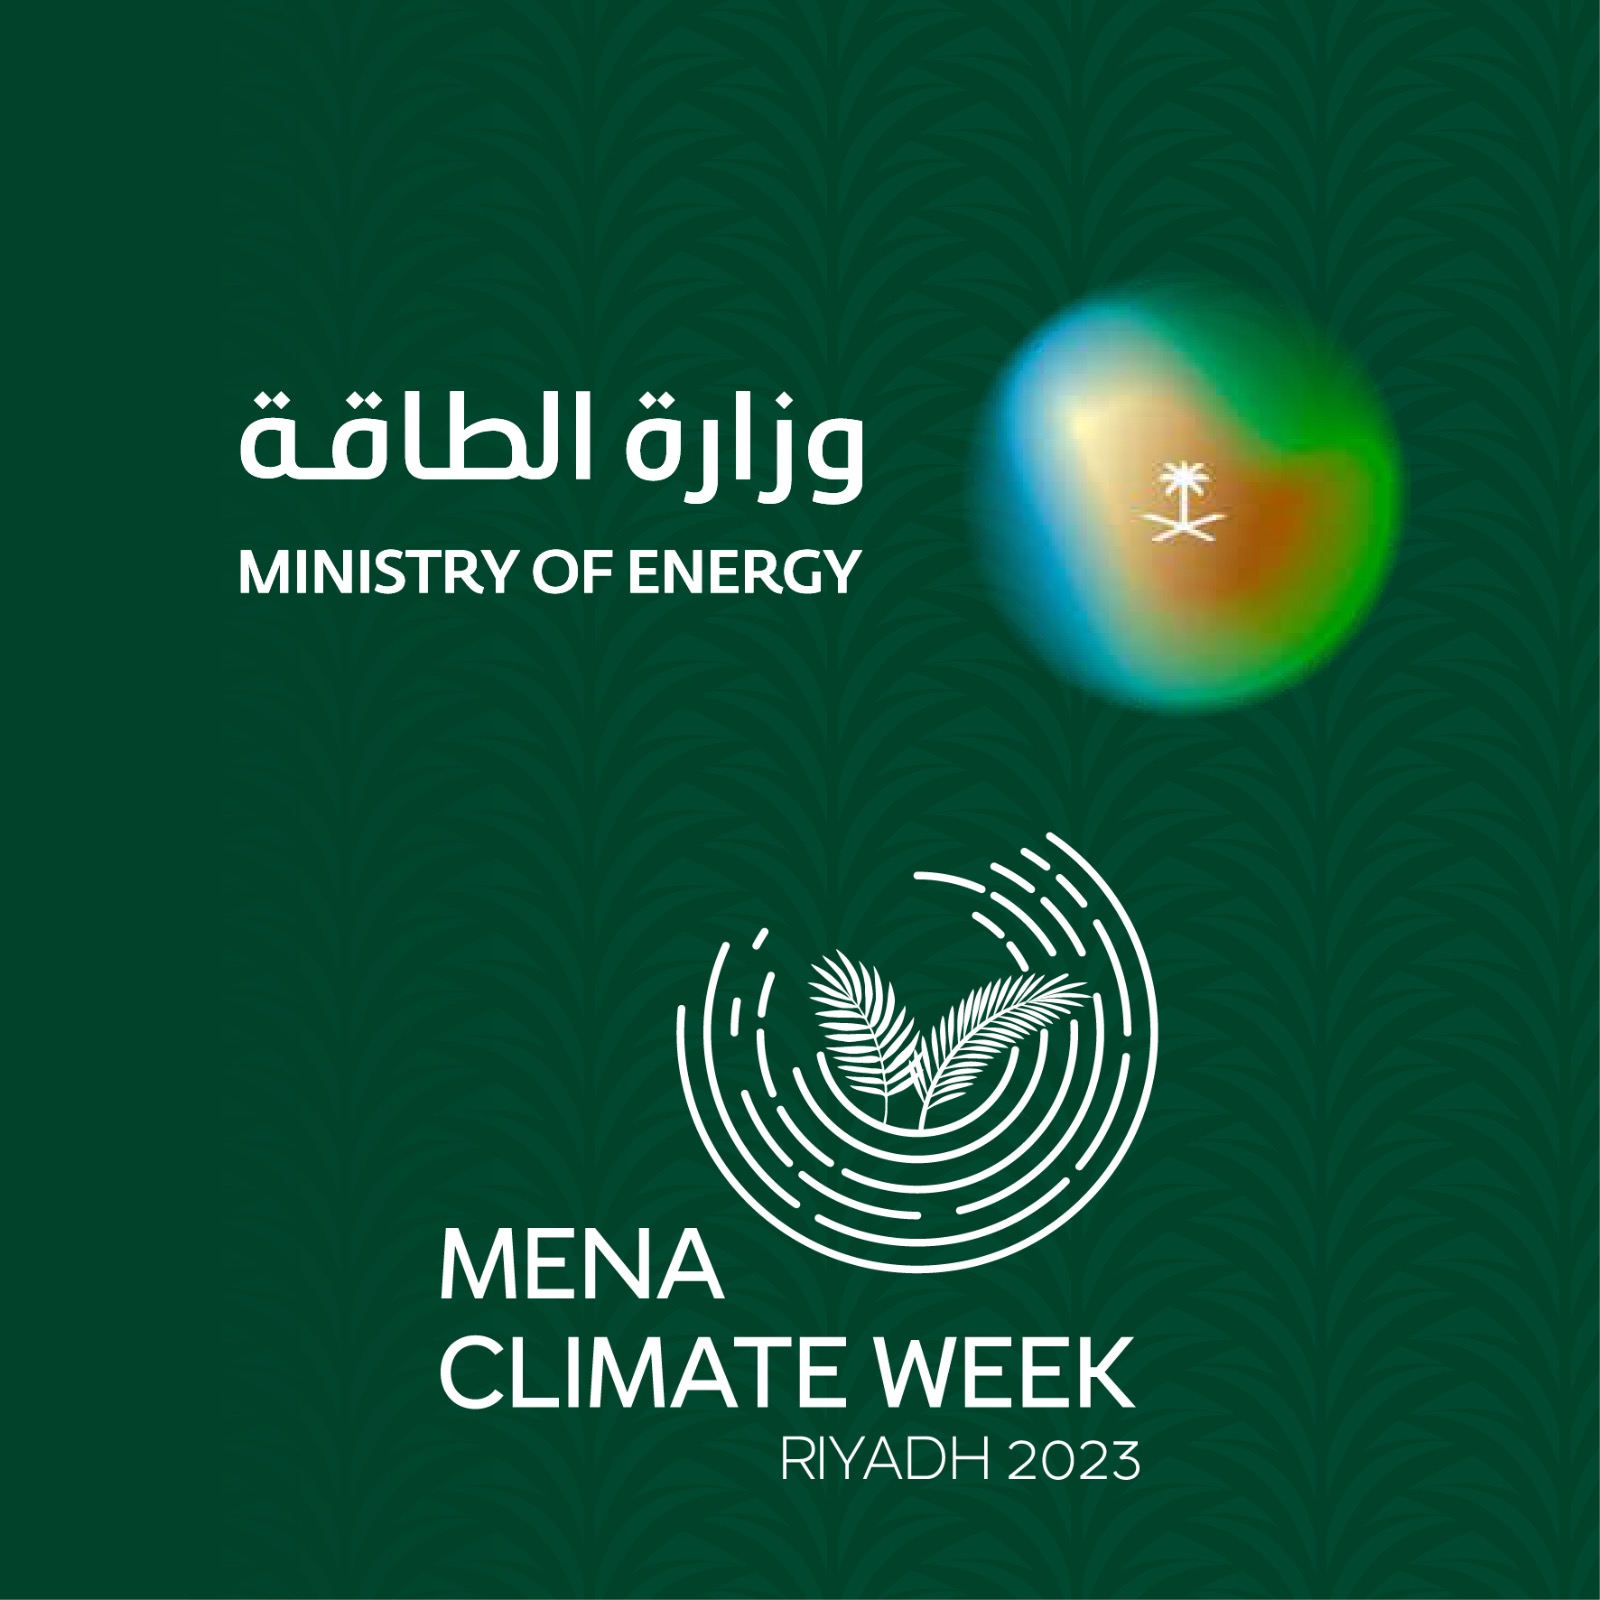 أبرز أحداث أسبوع المناخ لدول الشرق الأوسط وشمال أفريقيا